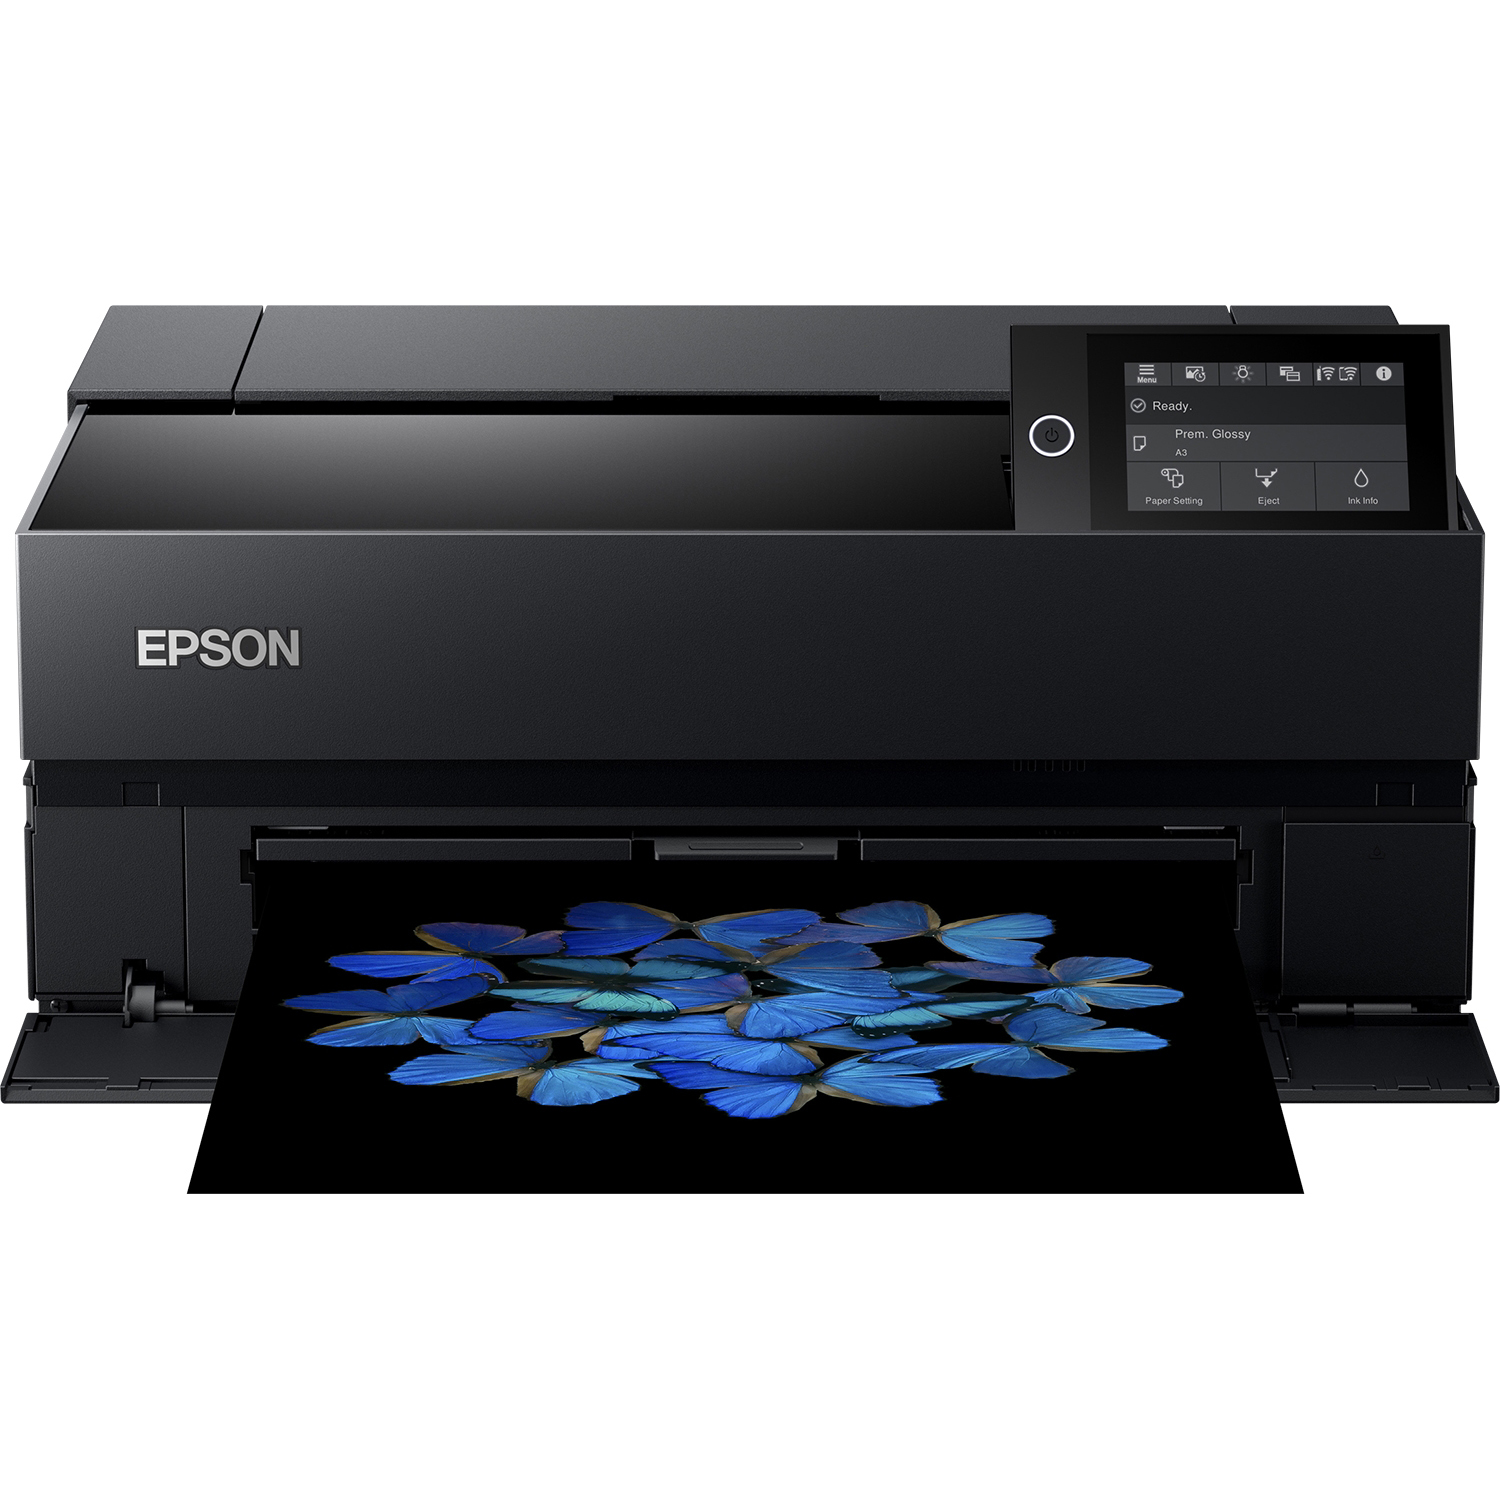 Original Epson Surecolor Sc-P700 A3 Plus Large Format Colour Inkjet Printer (C11CH38401DA)